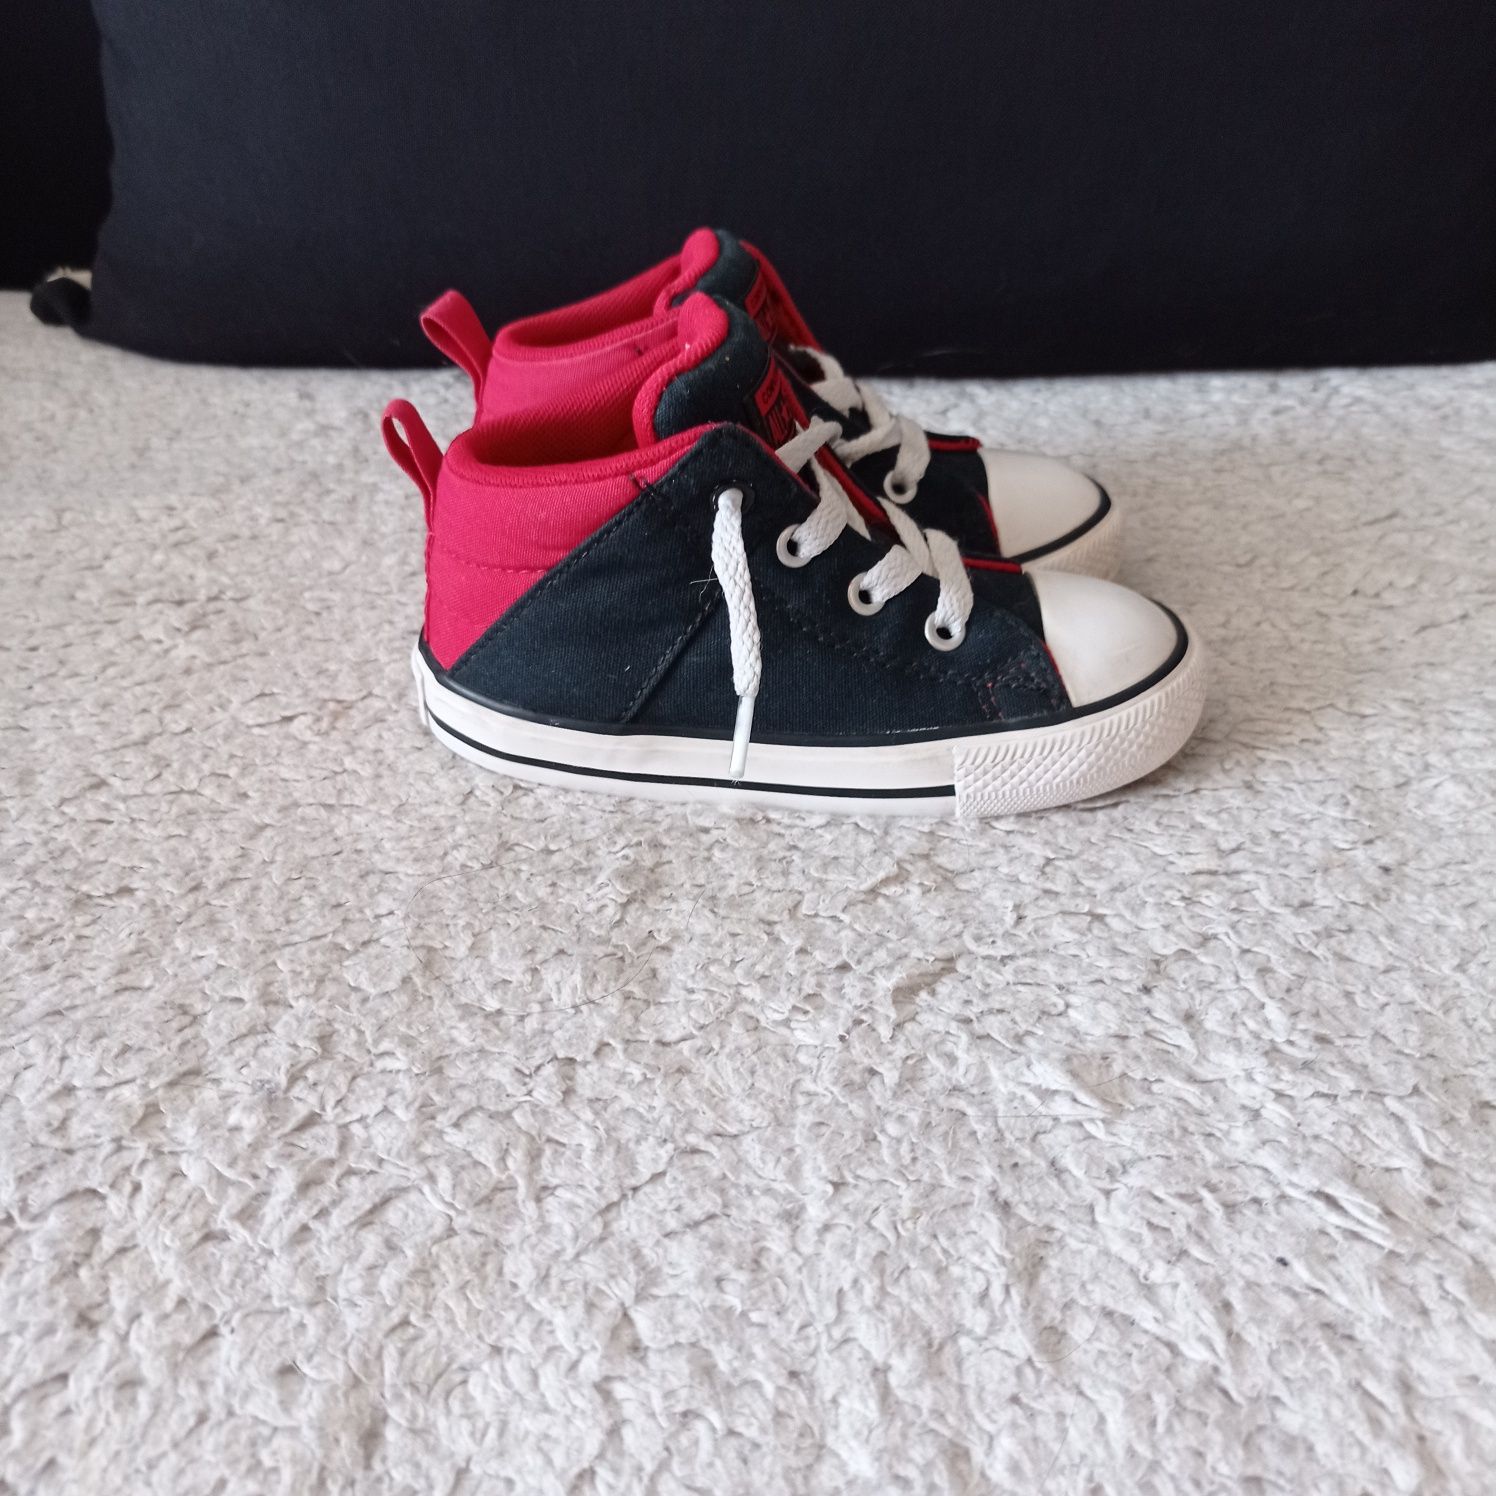 Buty dziecięce Converse rozmiar 24. Oryginalne